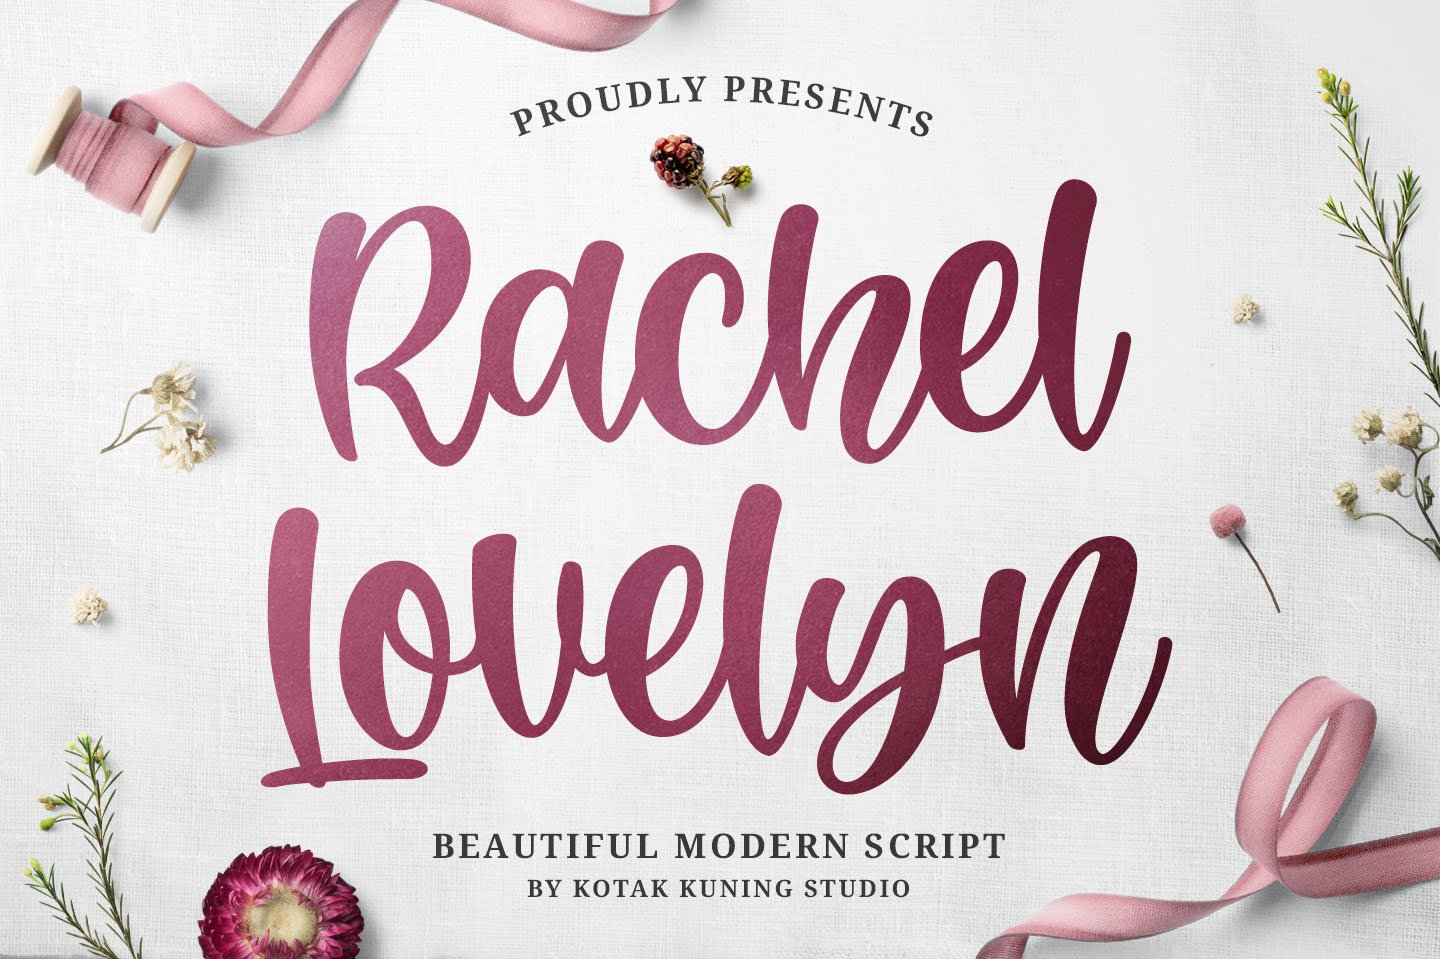 Rachel Lovelyn - Beautiful Script cover image.